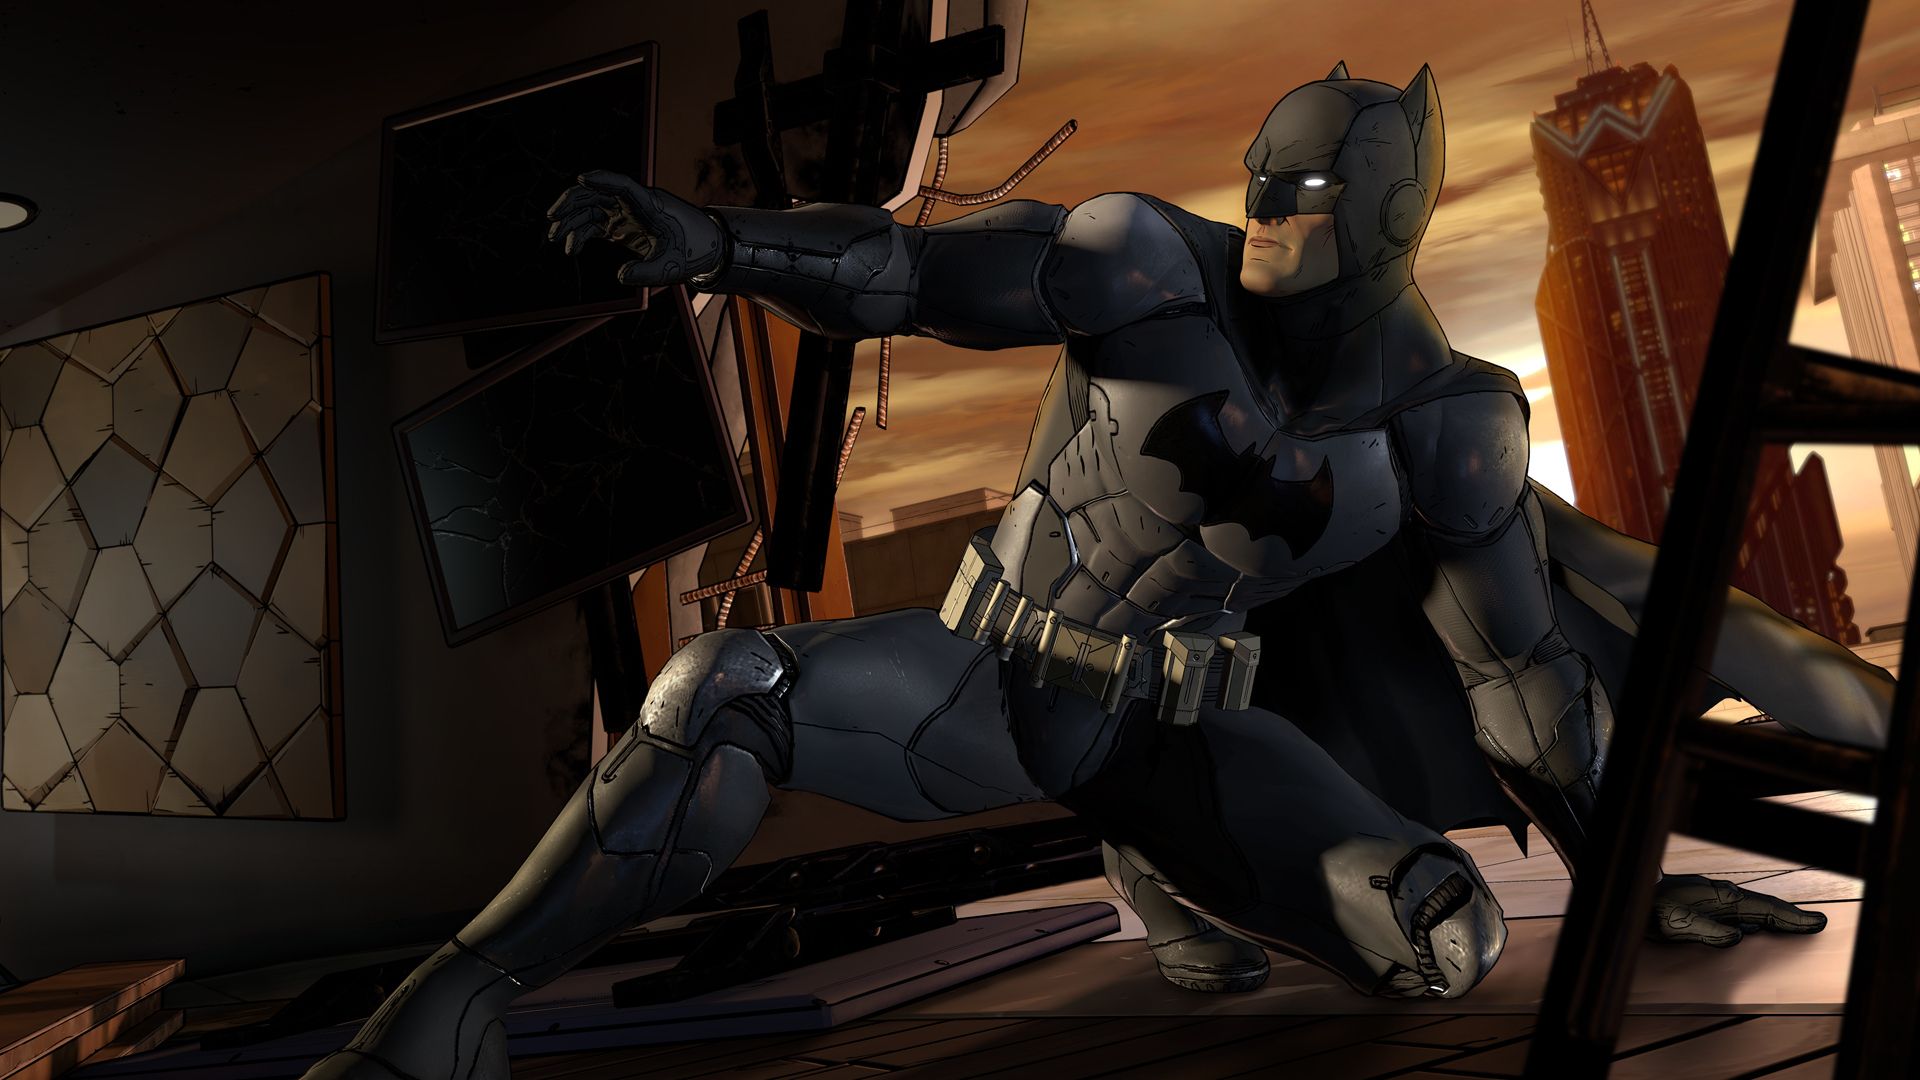 Gry z Batmanem – Batman przesuwający się po dachu w ciemnej scenie, z jednym kolanem w górze, drugim na ziemi.